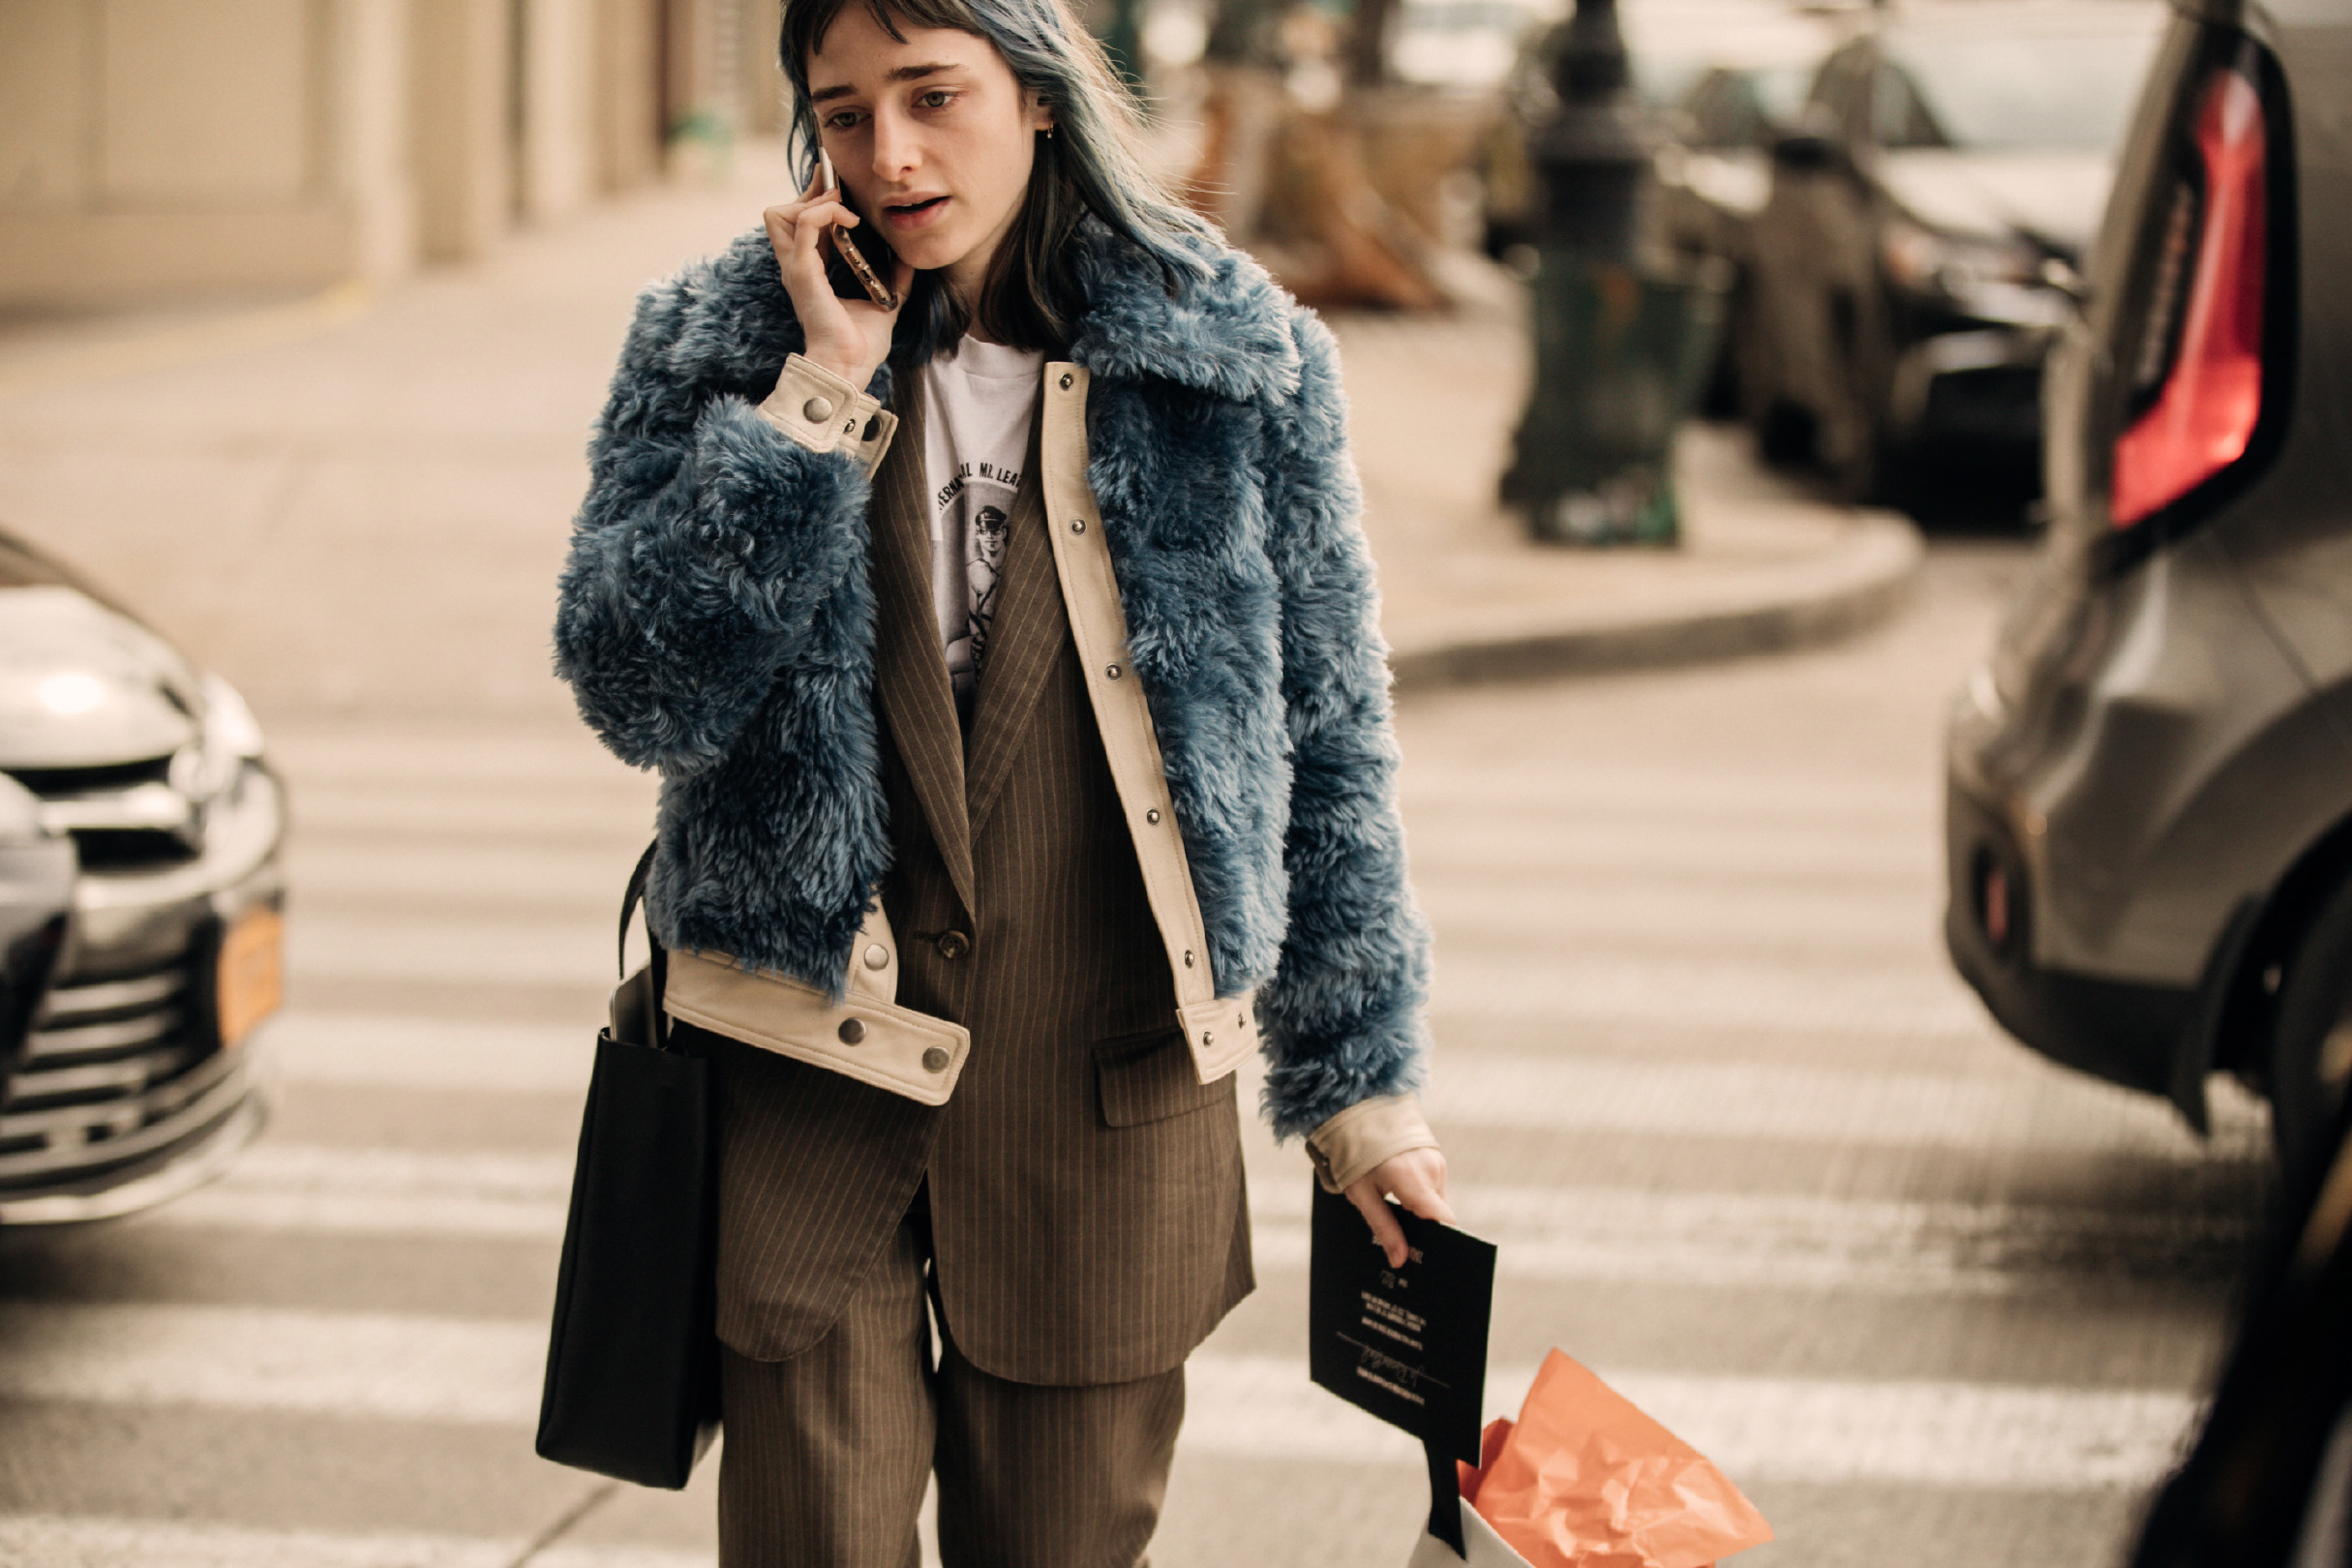 Sokak Stili: 2019-20 Sonbahar/Kış New York Moda Haftası 5. Gün